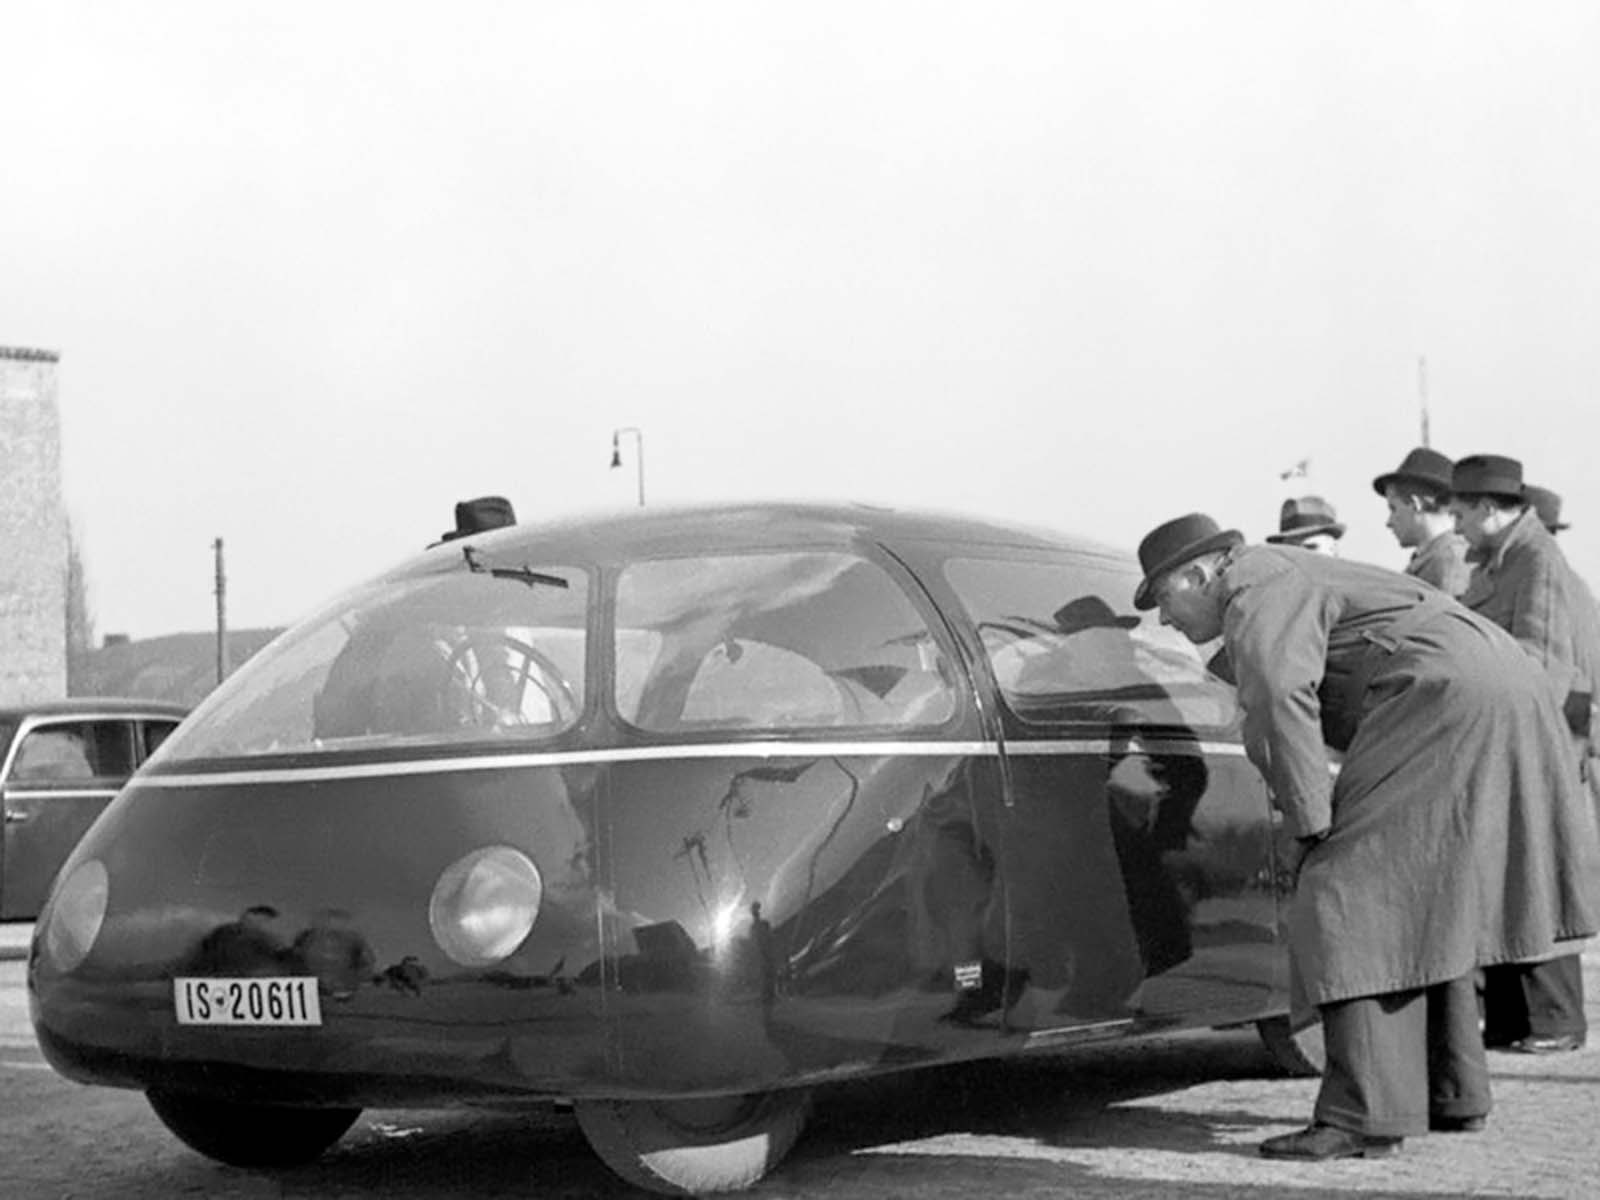 schlorwagen photographs 1939